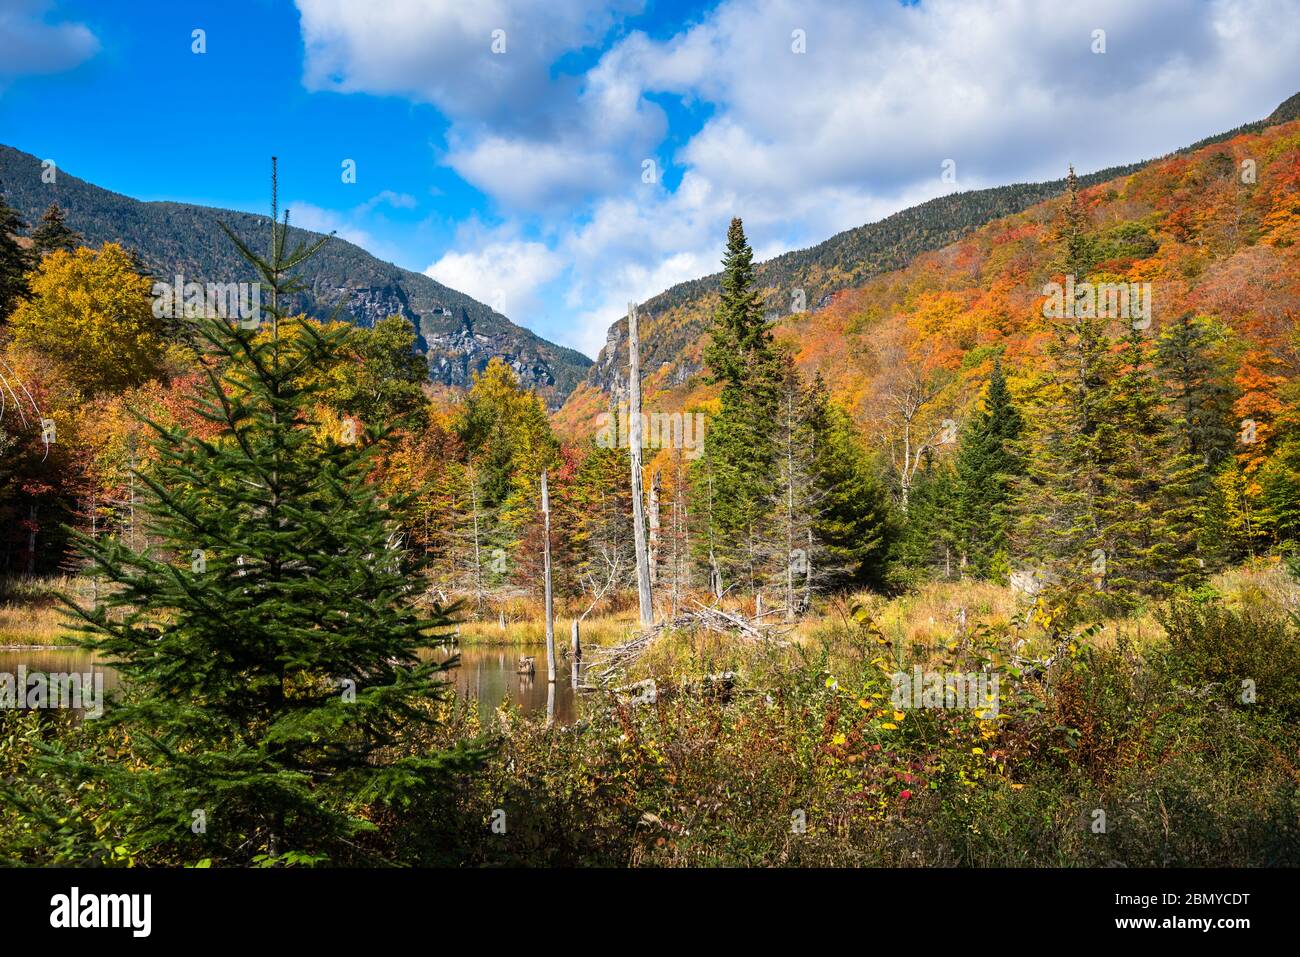 Majestätische bewaldete Berglandschaft auf dem Gipfel des Herbstes an einem sonnigen Tag. Ein Teich, umgeben von bunten Laubbäumen, steht im Vordergrund. Stockfoto